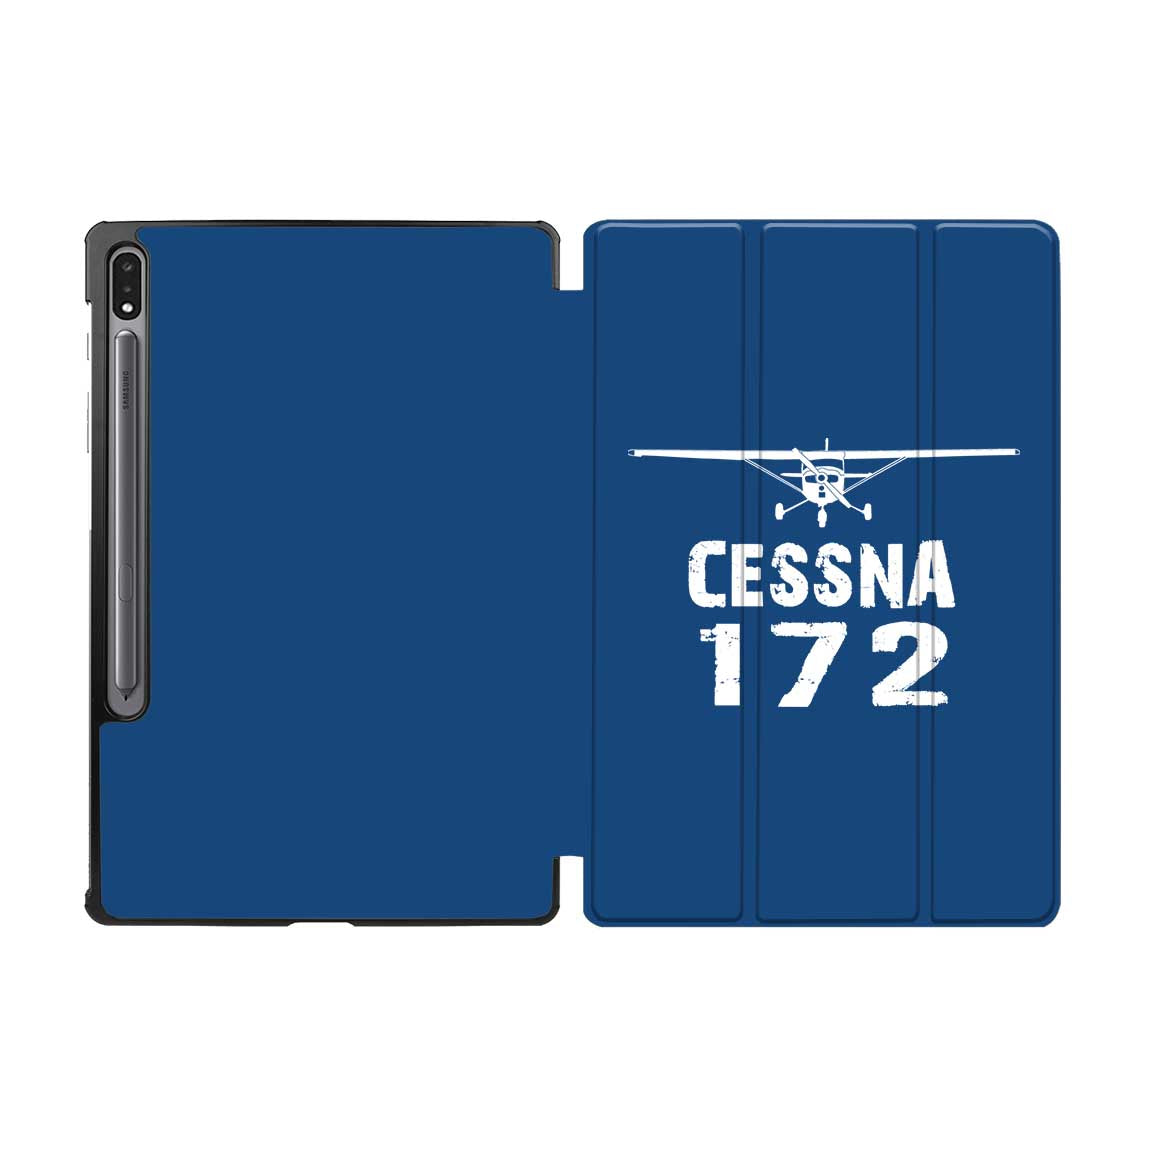 Cessna 172 & Plane Designed Samsung Tablet Cases